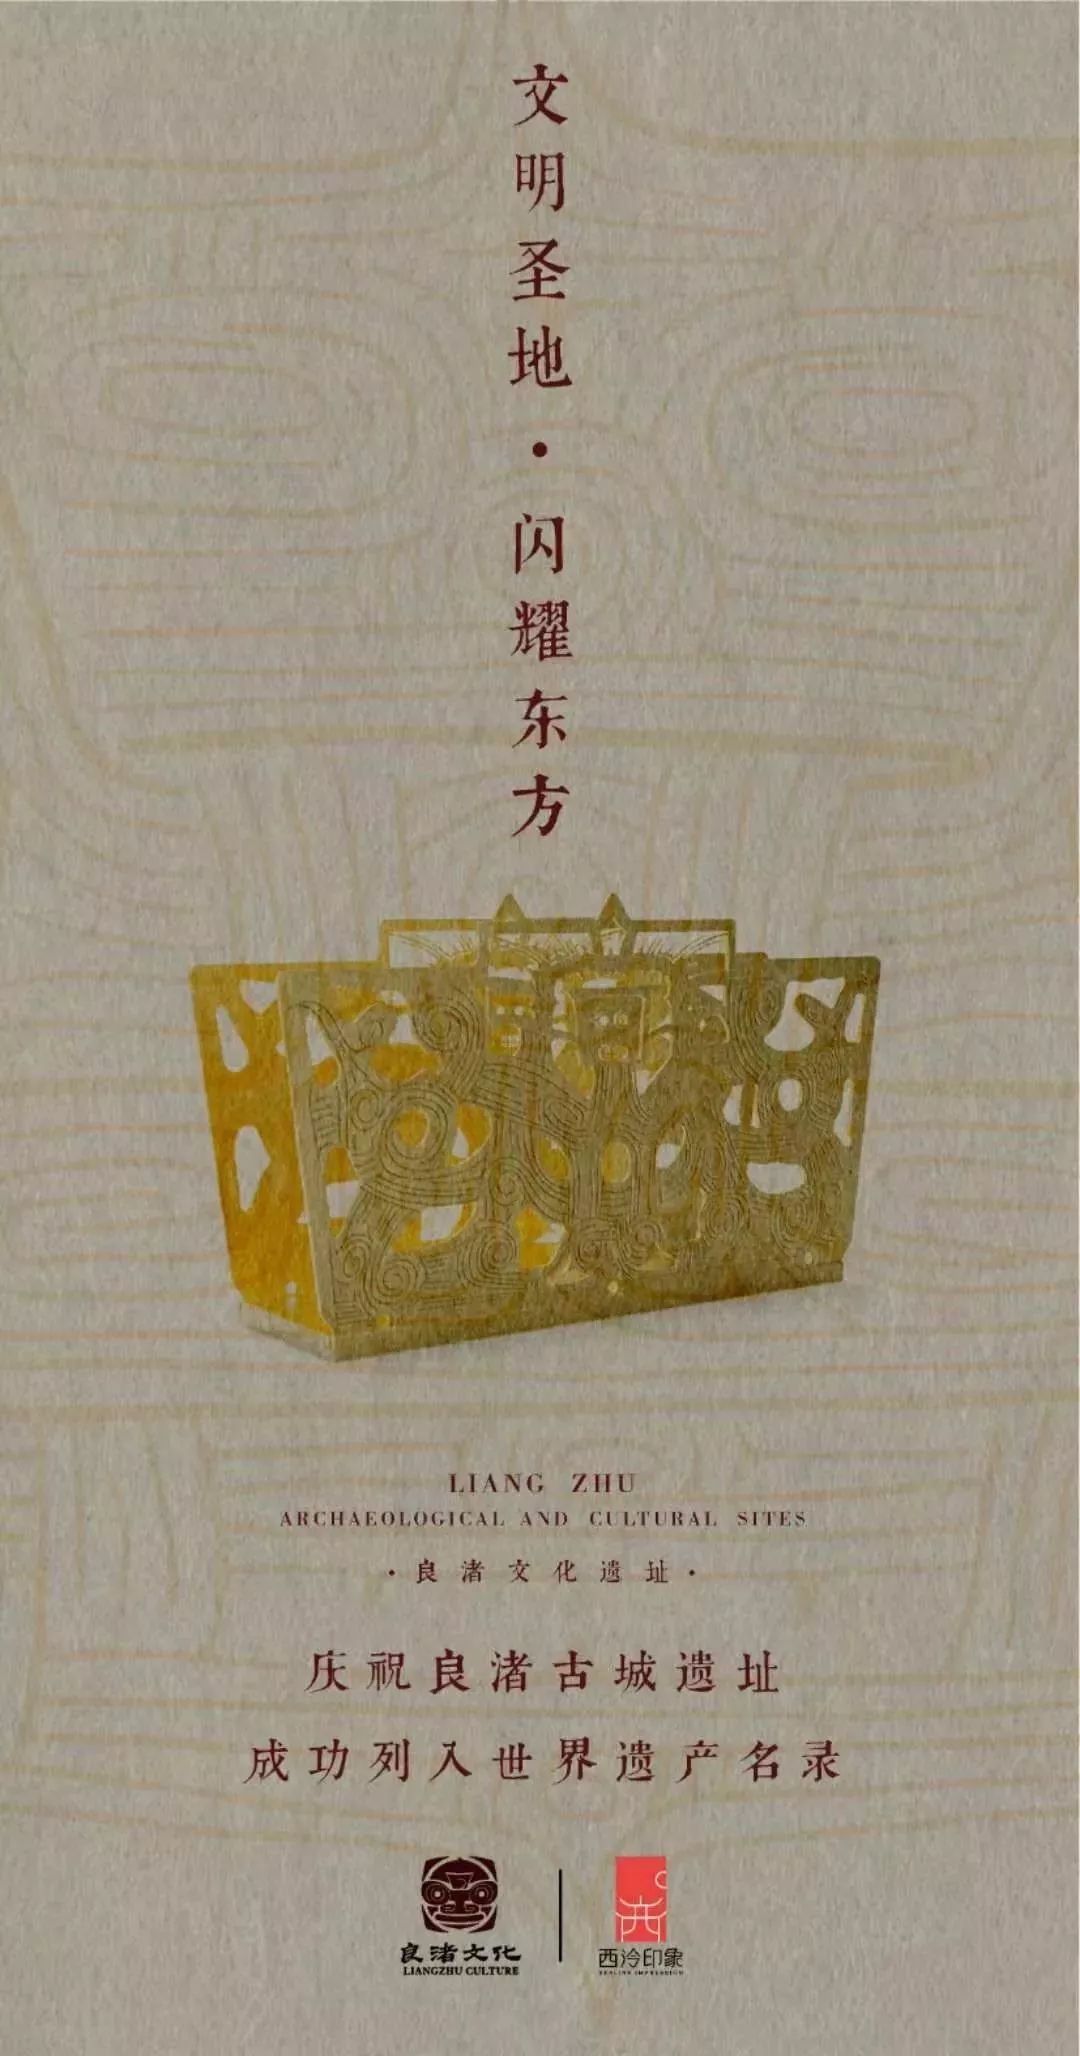 良渚文化海报画图片